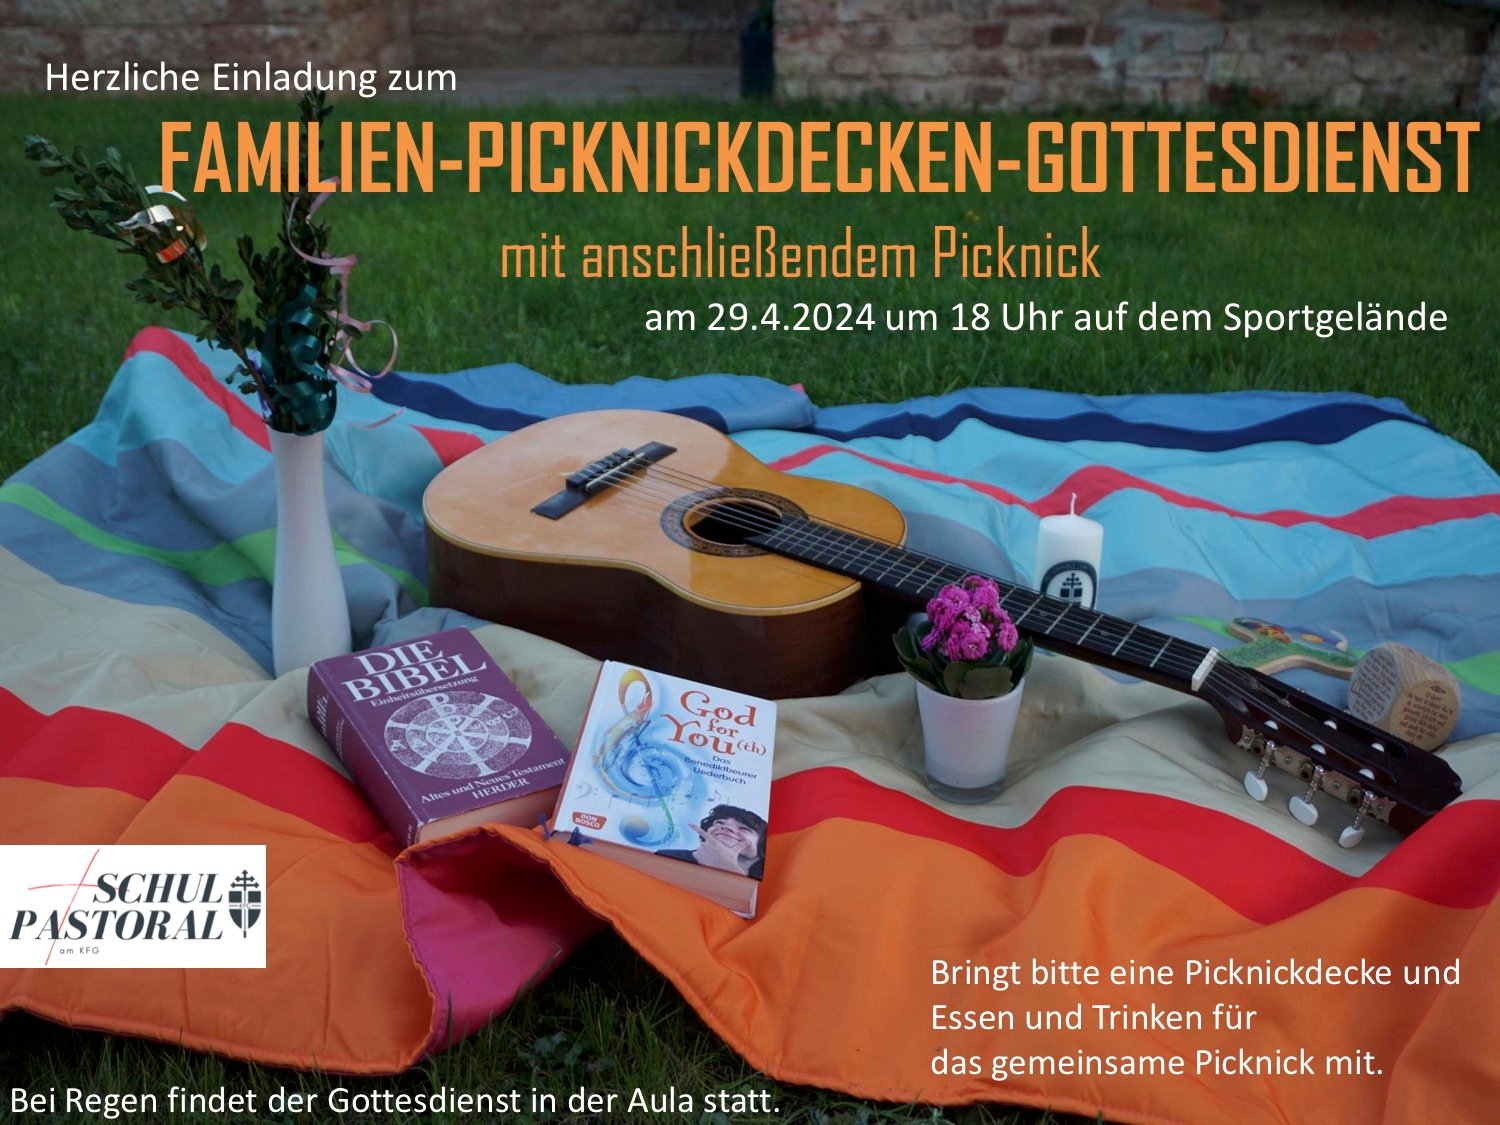 Plakat Picknickdecken-Gottesdienst